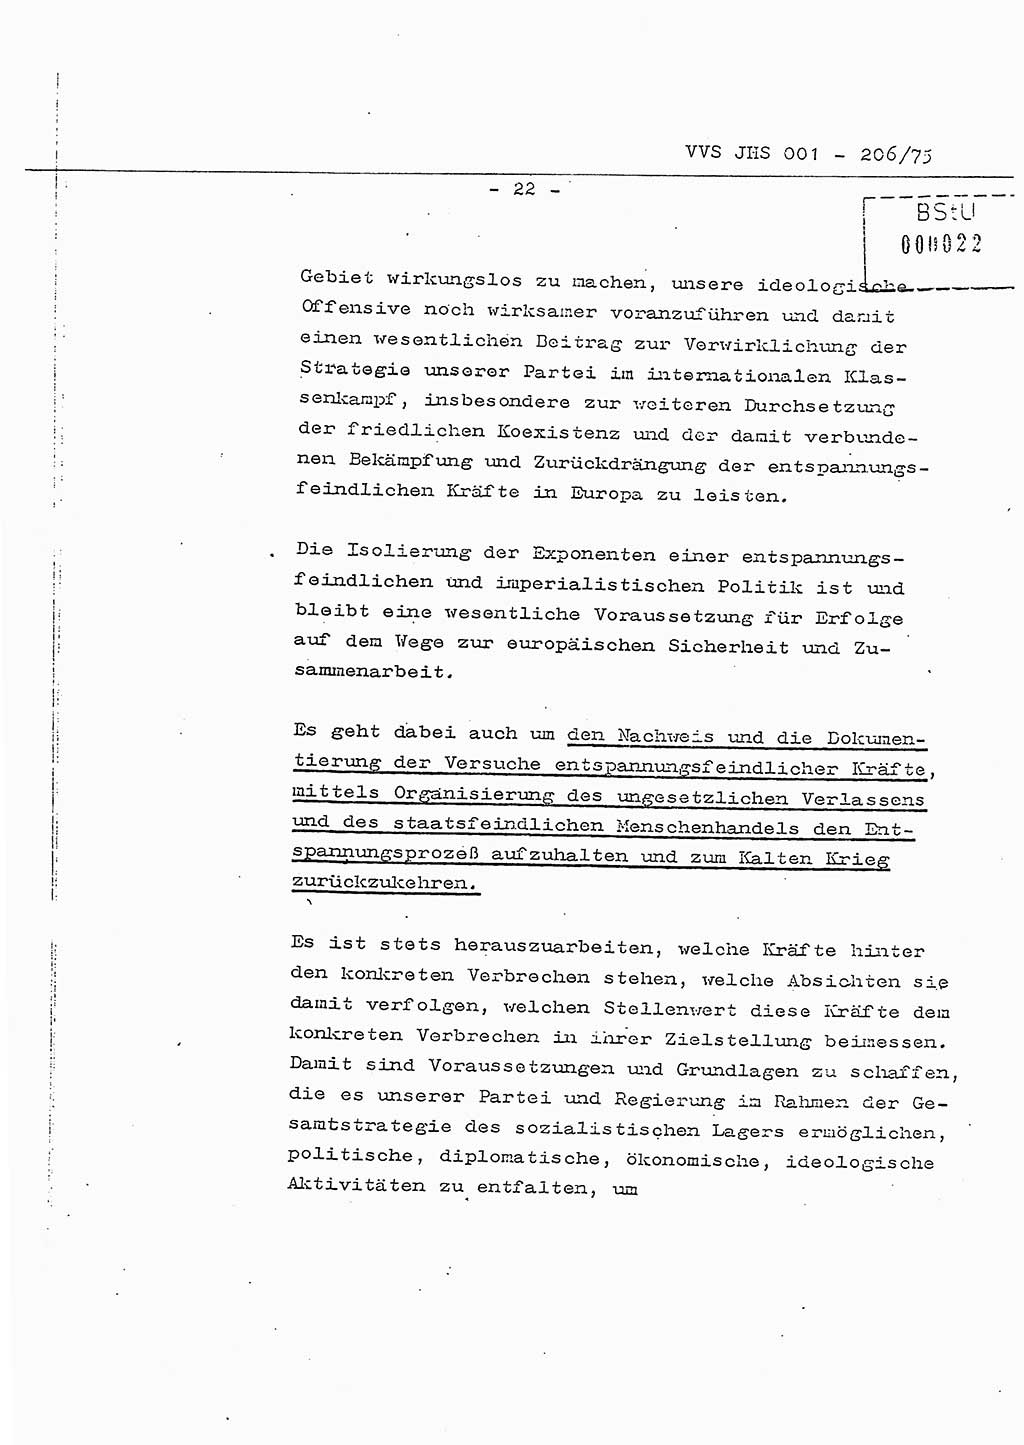 Dissertation Generalmajor Manfred Hummitzsch (Leiter der BV Leipzig), Generalmajor Heinz Fiedler (HA Ⅵ), Oberst Rolf Fister (HA Ⅸ), Ministerium für Staatssicherheit (MfS) [Deutsche Demokratische Republik (DDR)], Juristische Hochschule (JHS), Vertrauliche Verschlußsache (VVS) 001-206/75, Potsdam 1975, Seite 22 (Diss. MfS DDR JHS VVS 001-206/75 1975, S. 22)